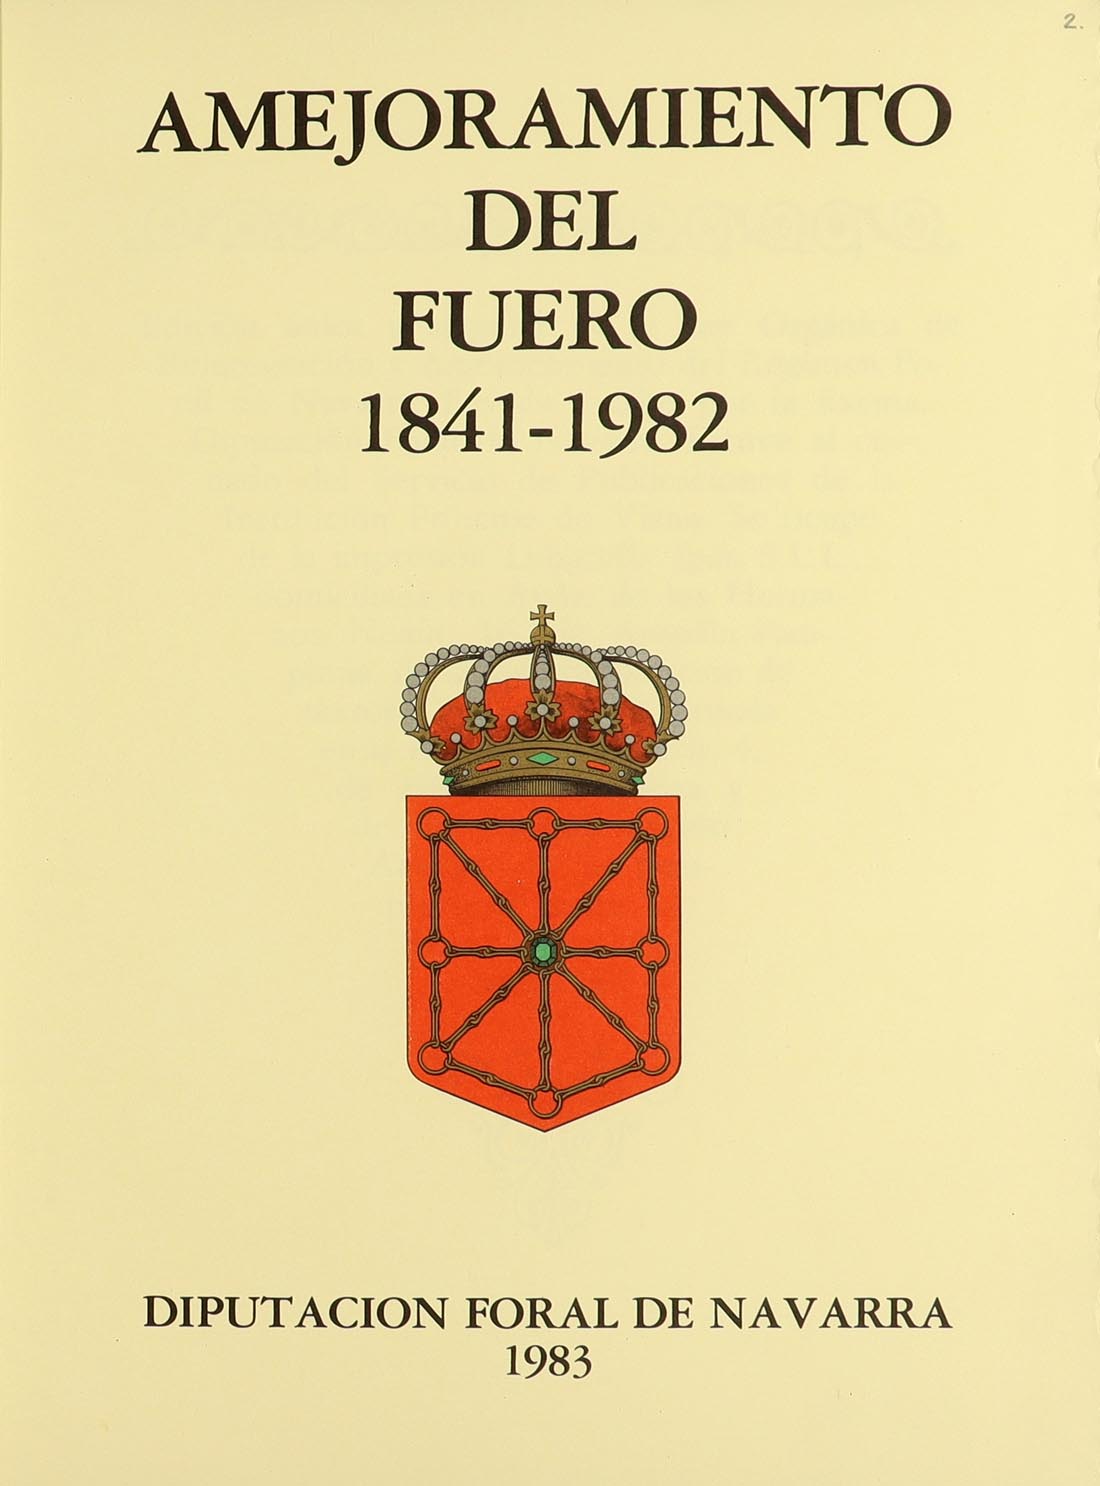 Portada de la edición de lujo del Amejoramiento custodiado en el Archivo 
Real y General de Navarra.